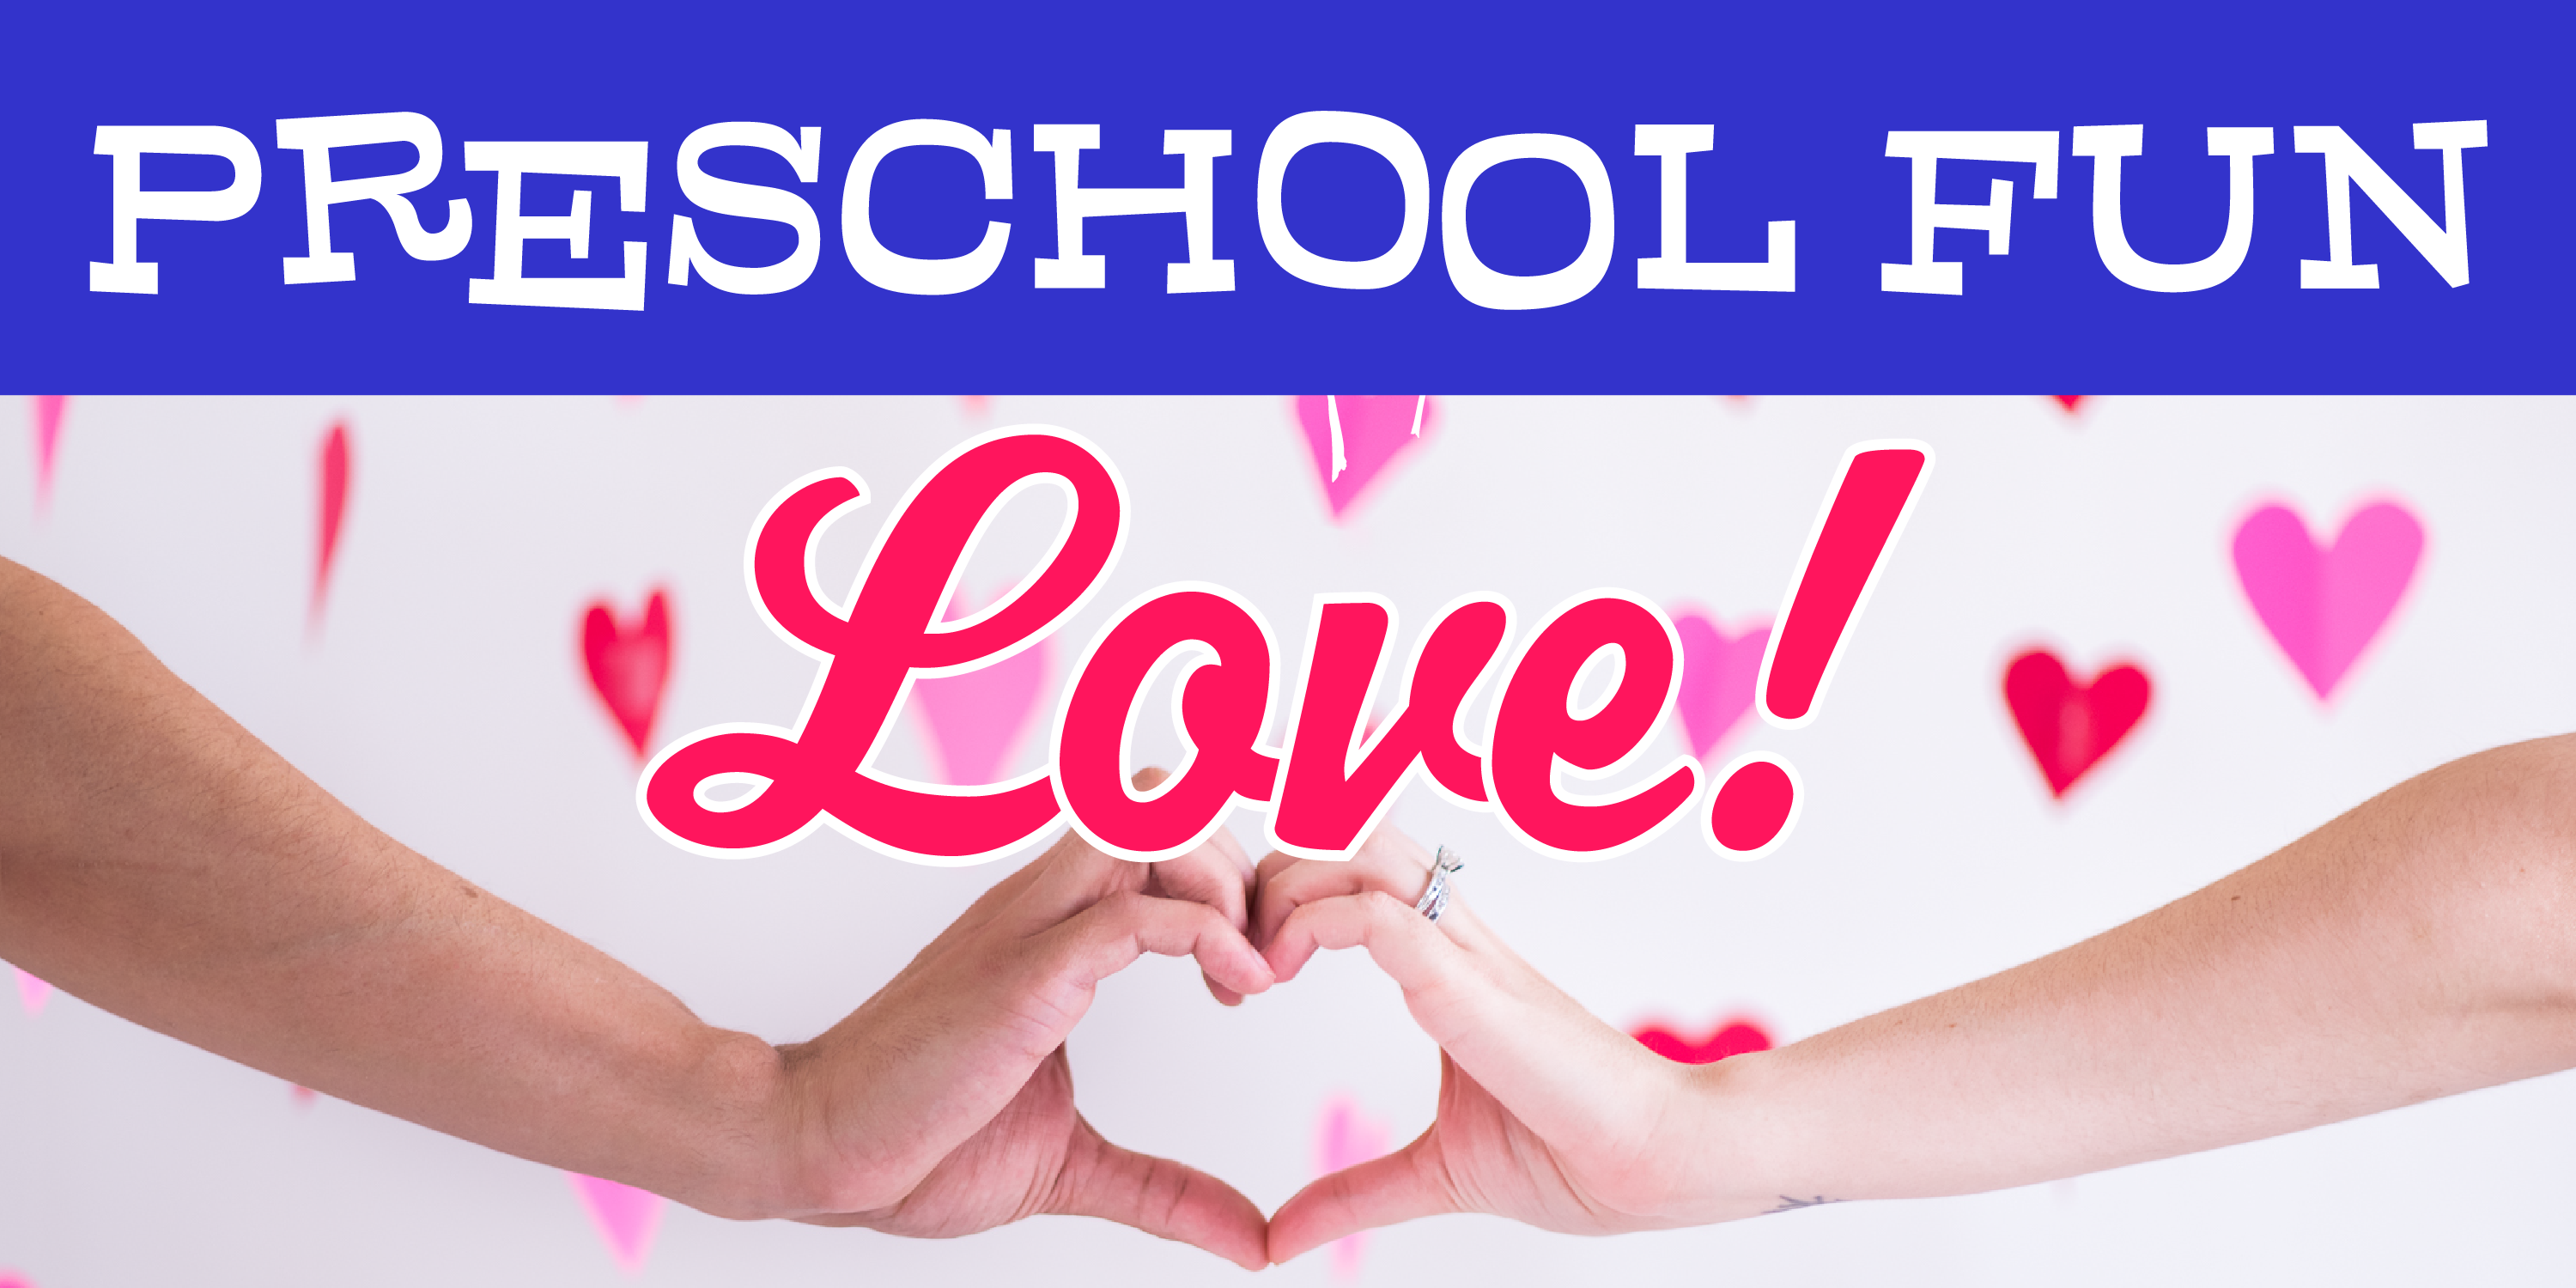 Preschool Fun: Love!